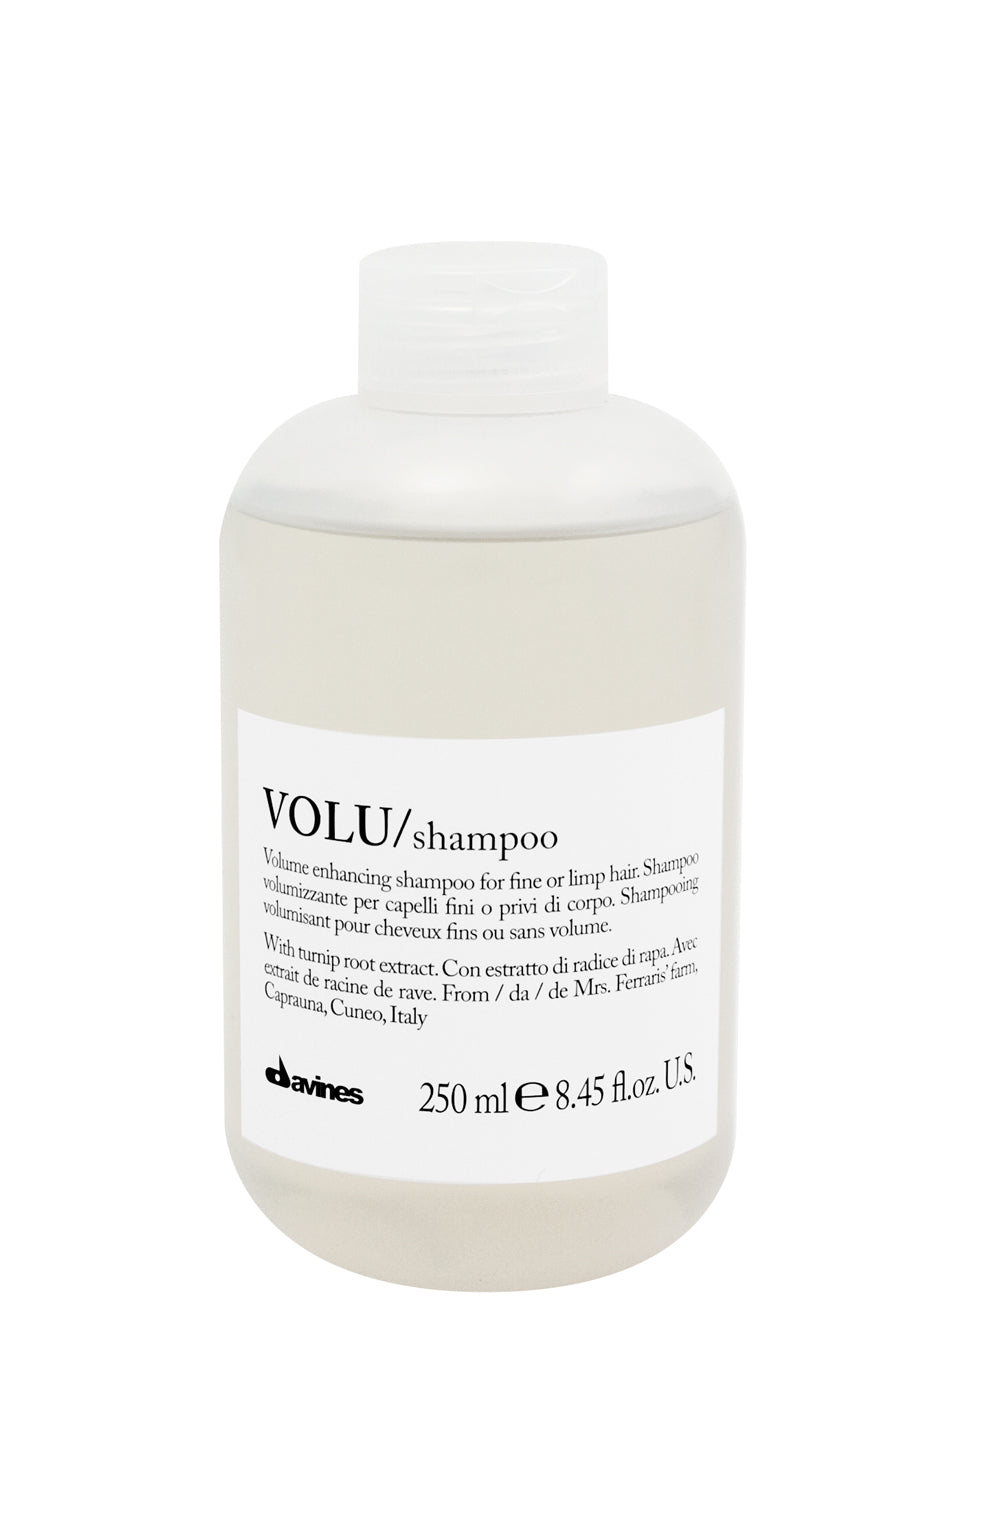 VOLU shampoo - szampon zwiększający objętość włosów